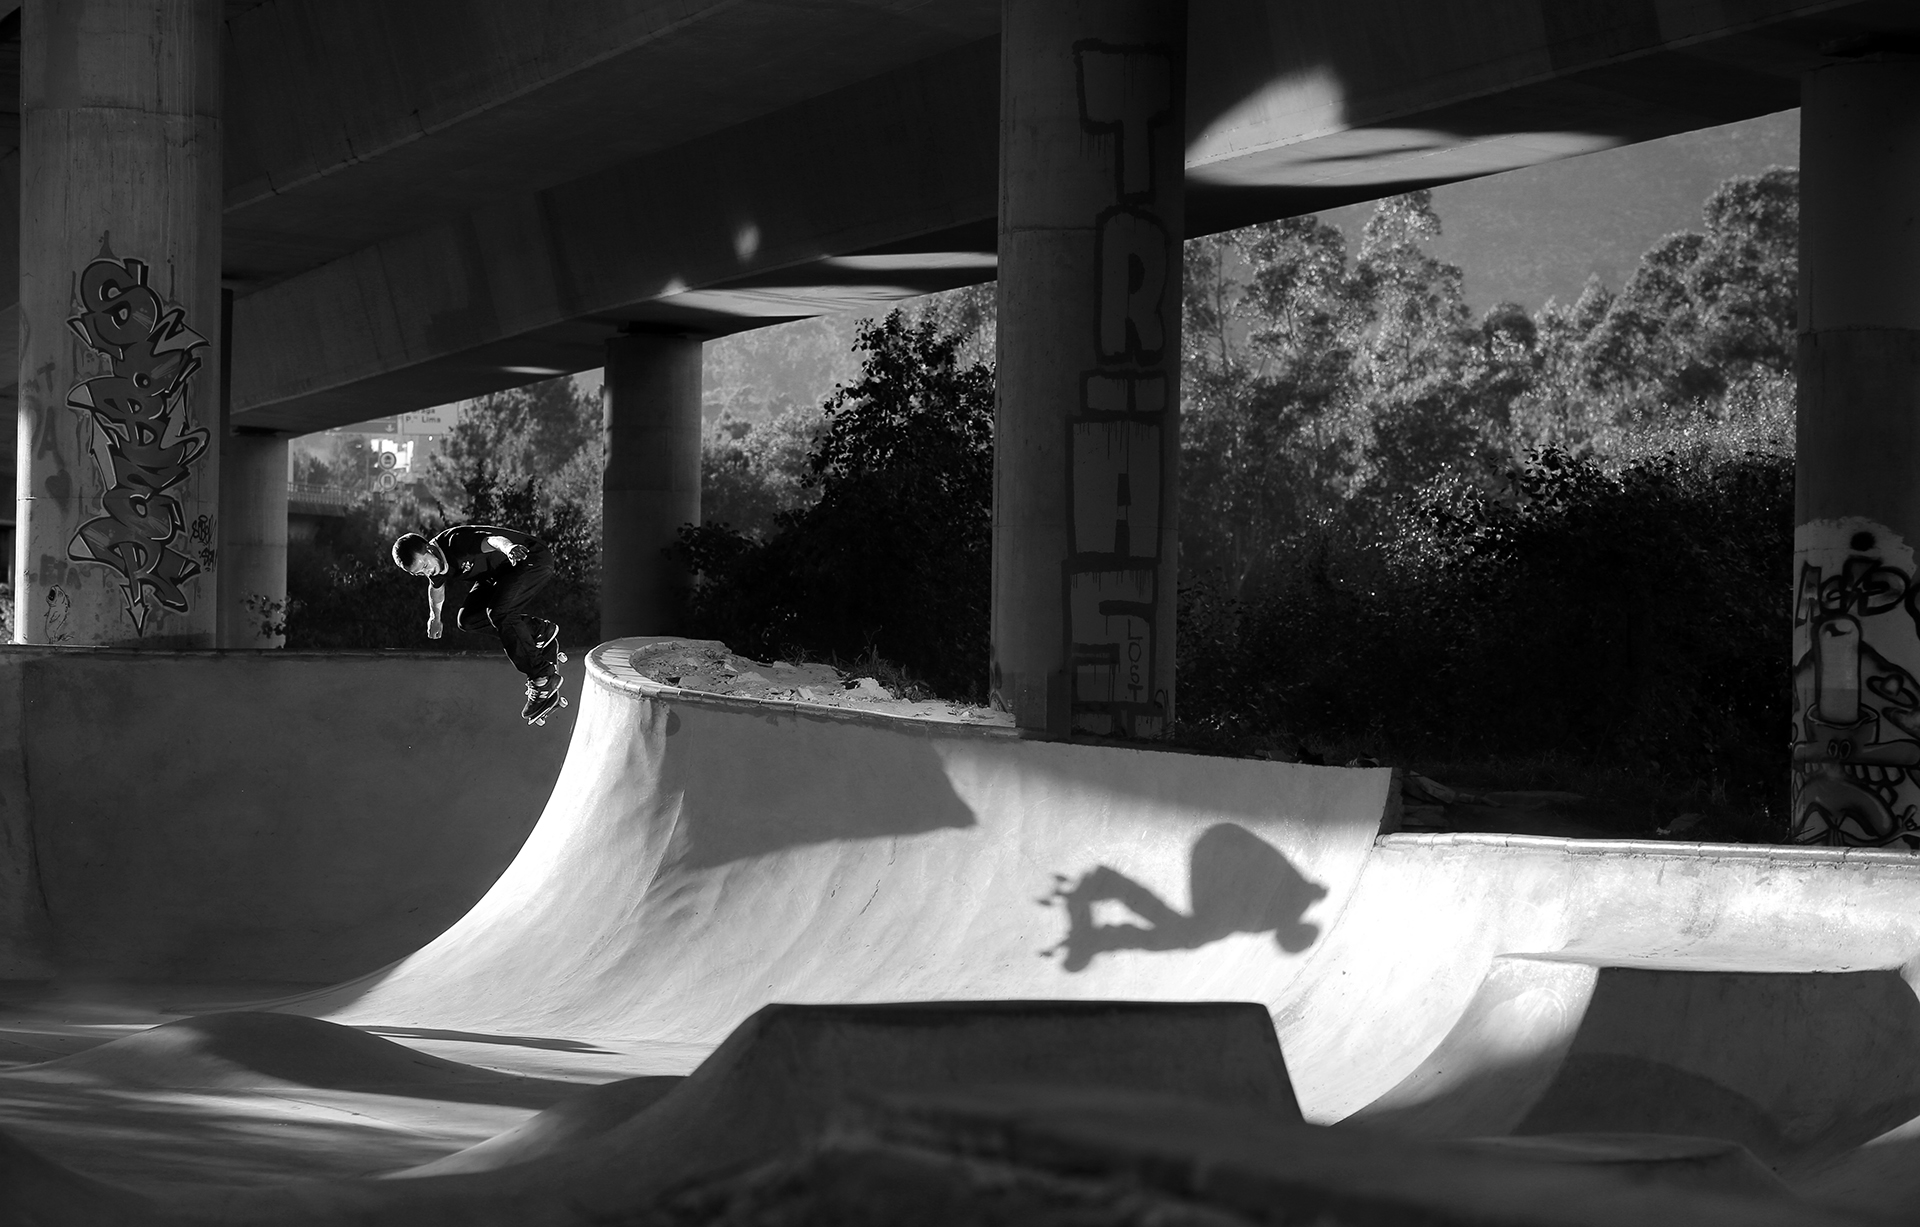 Skateboarding_Life_Renato_Lainho_com (15)